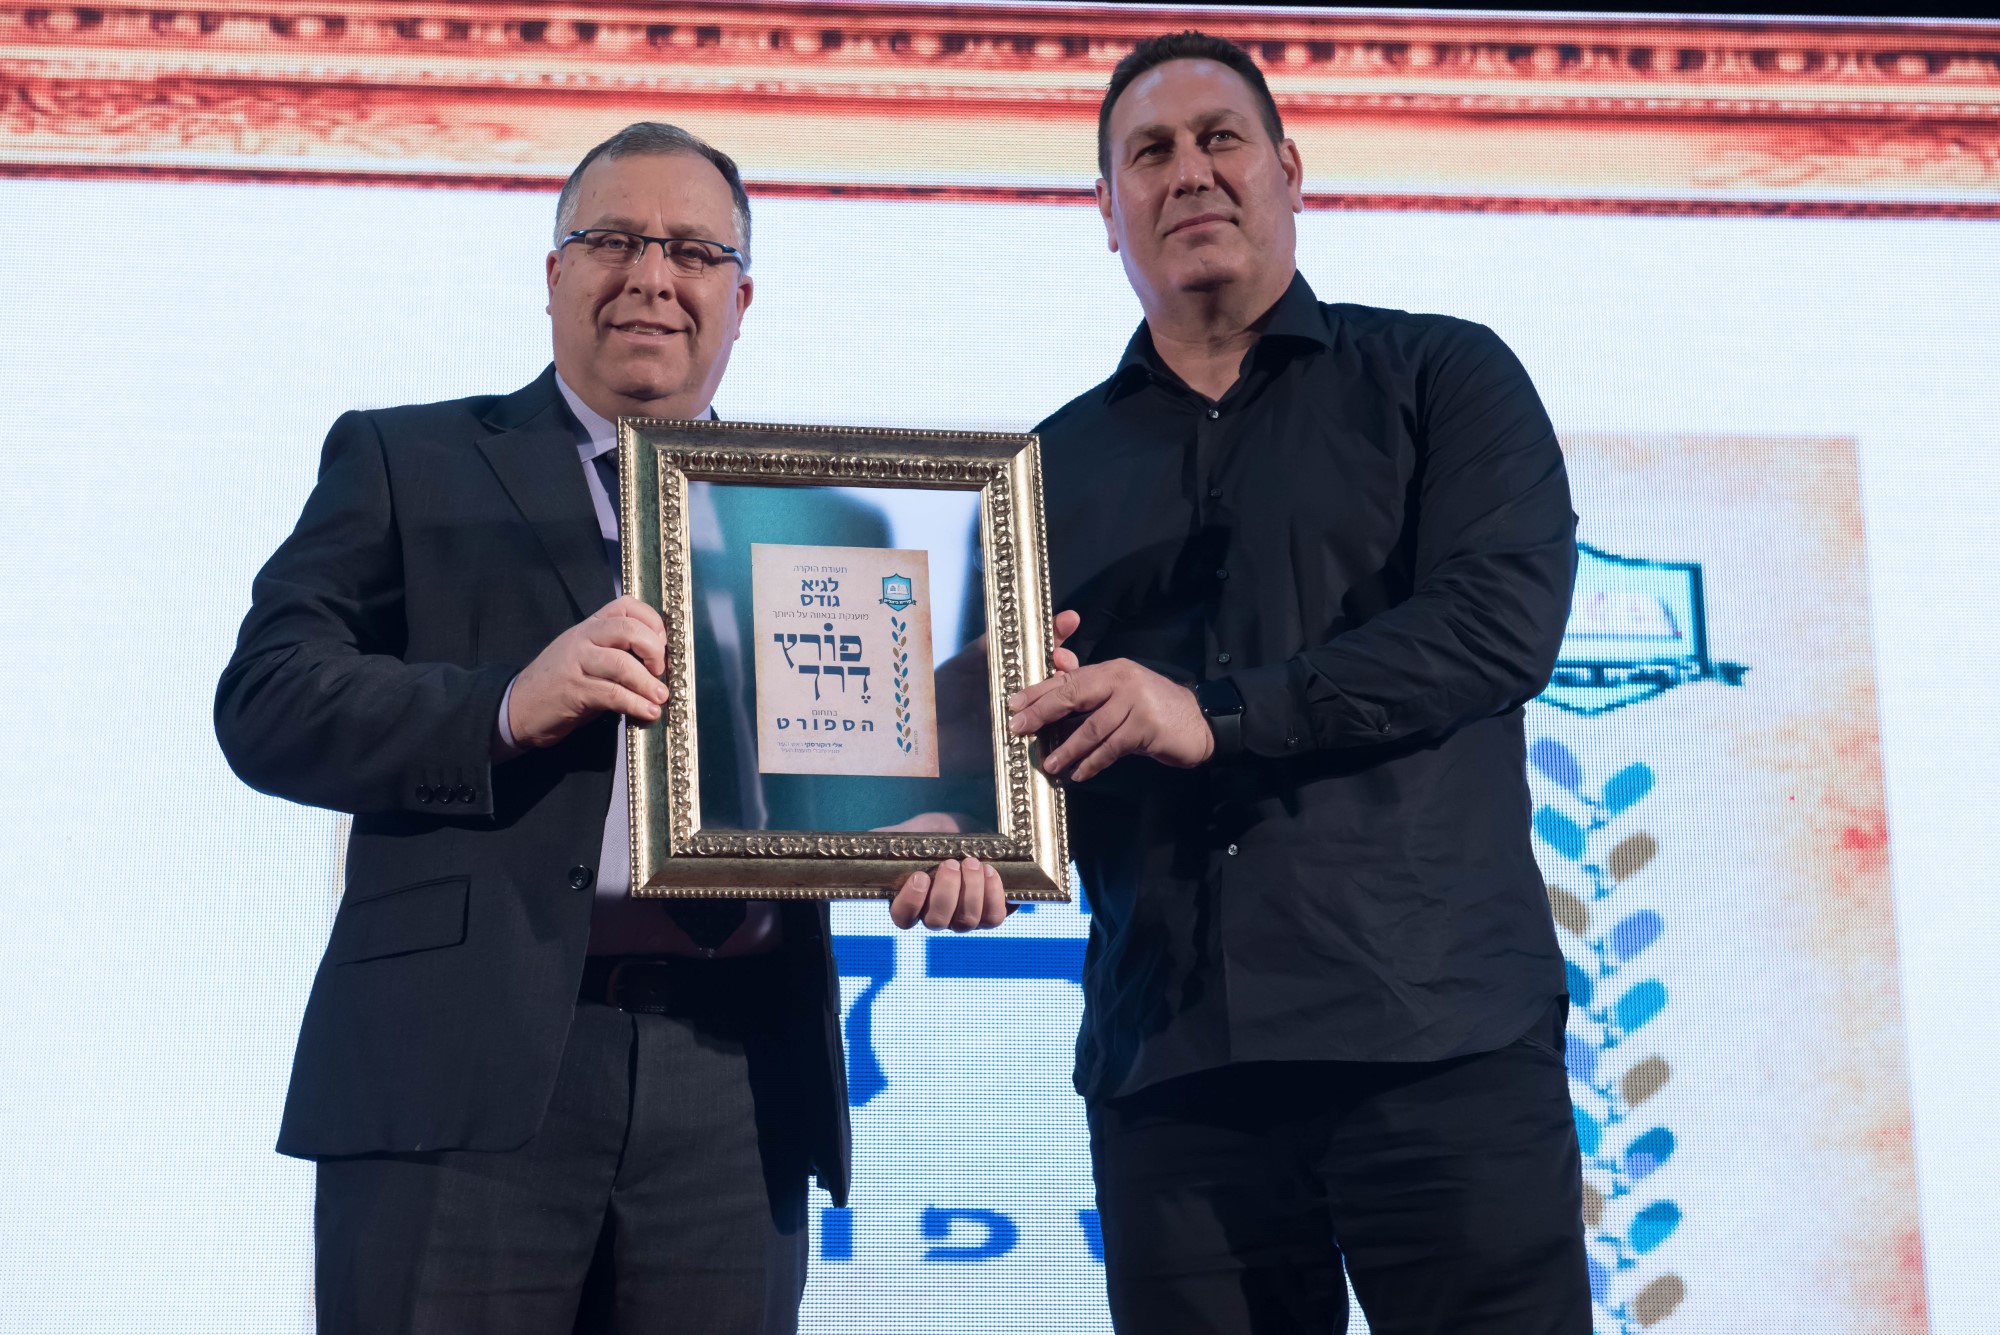 ראש העיר קריית ביאליק , אלי דוקורסקי, בירך את גיא גודס על היבחרו כמאמן נבחרת ישראל בכדורסל